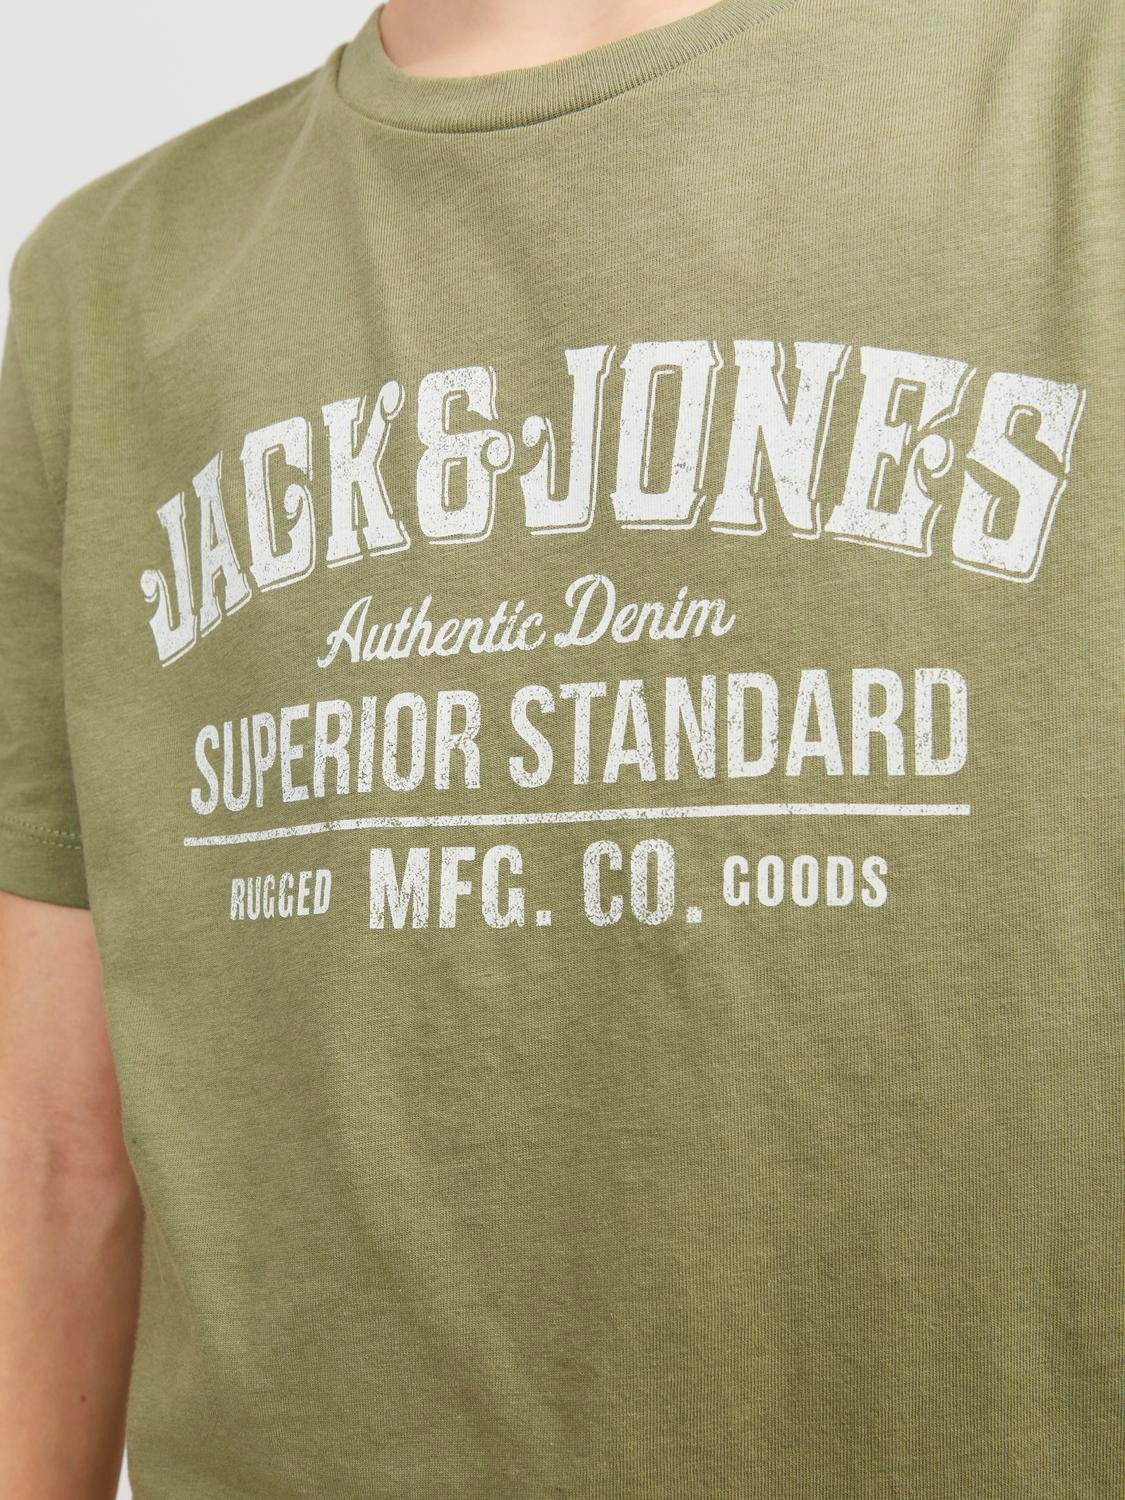 Jack & Jones Gedruckt T-shirt Für jungs -Oil Green - 12237363